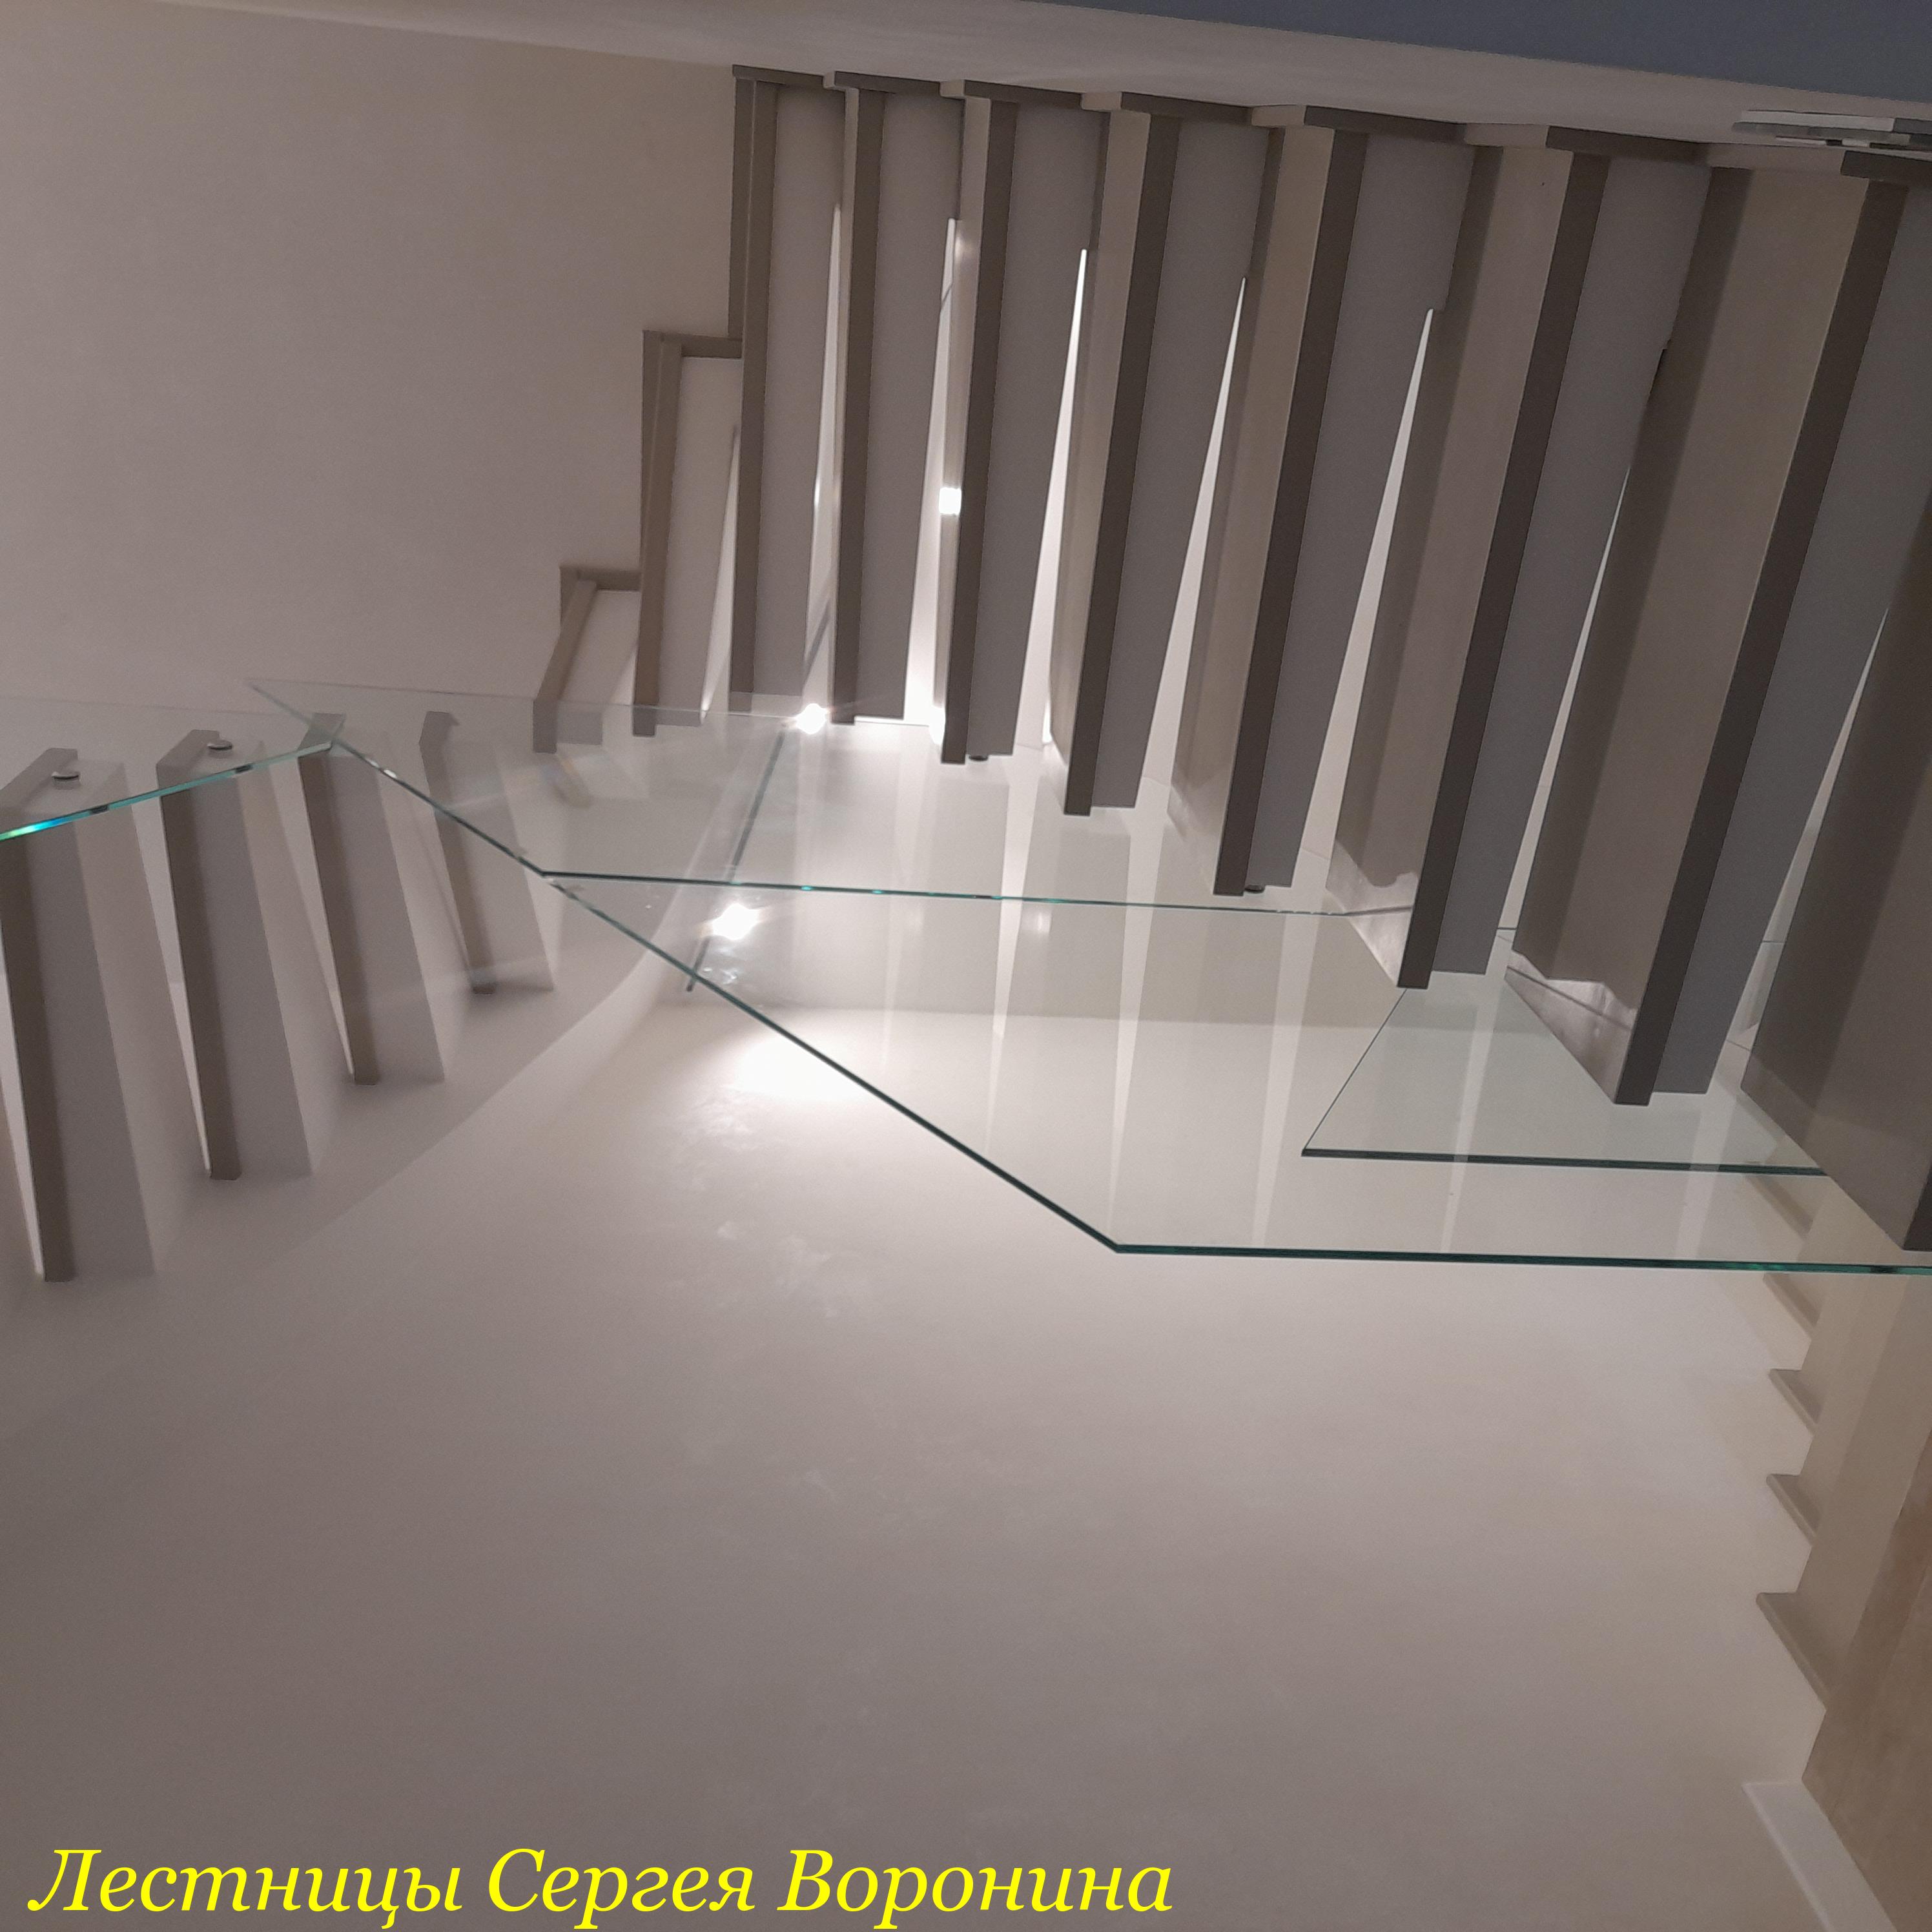 Межэтажные Лестницы Сергея Воронина, Воронеж - Марина